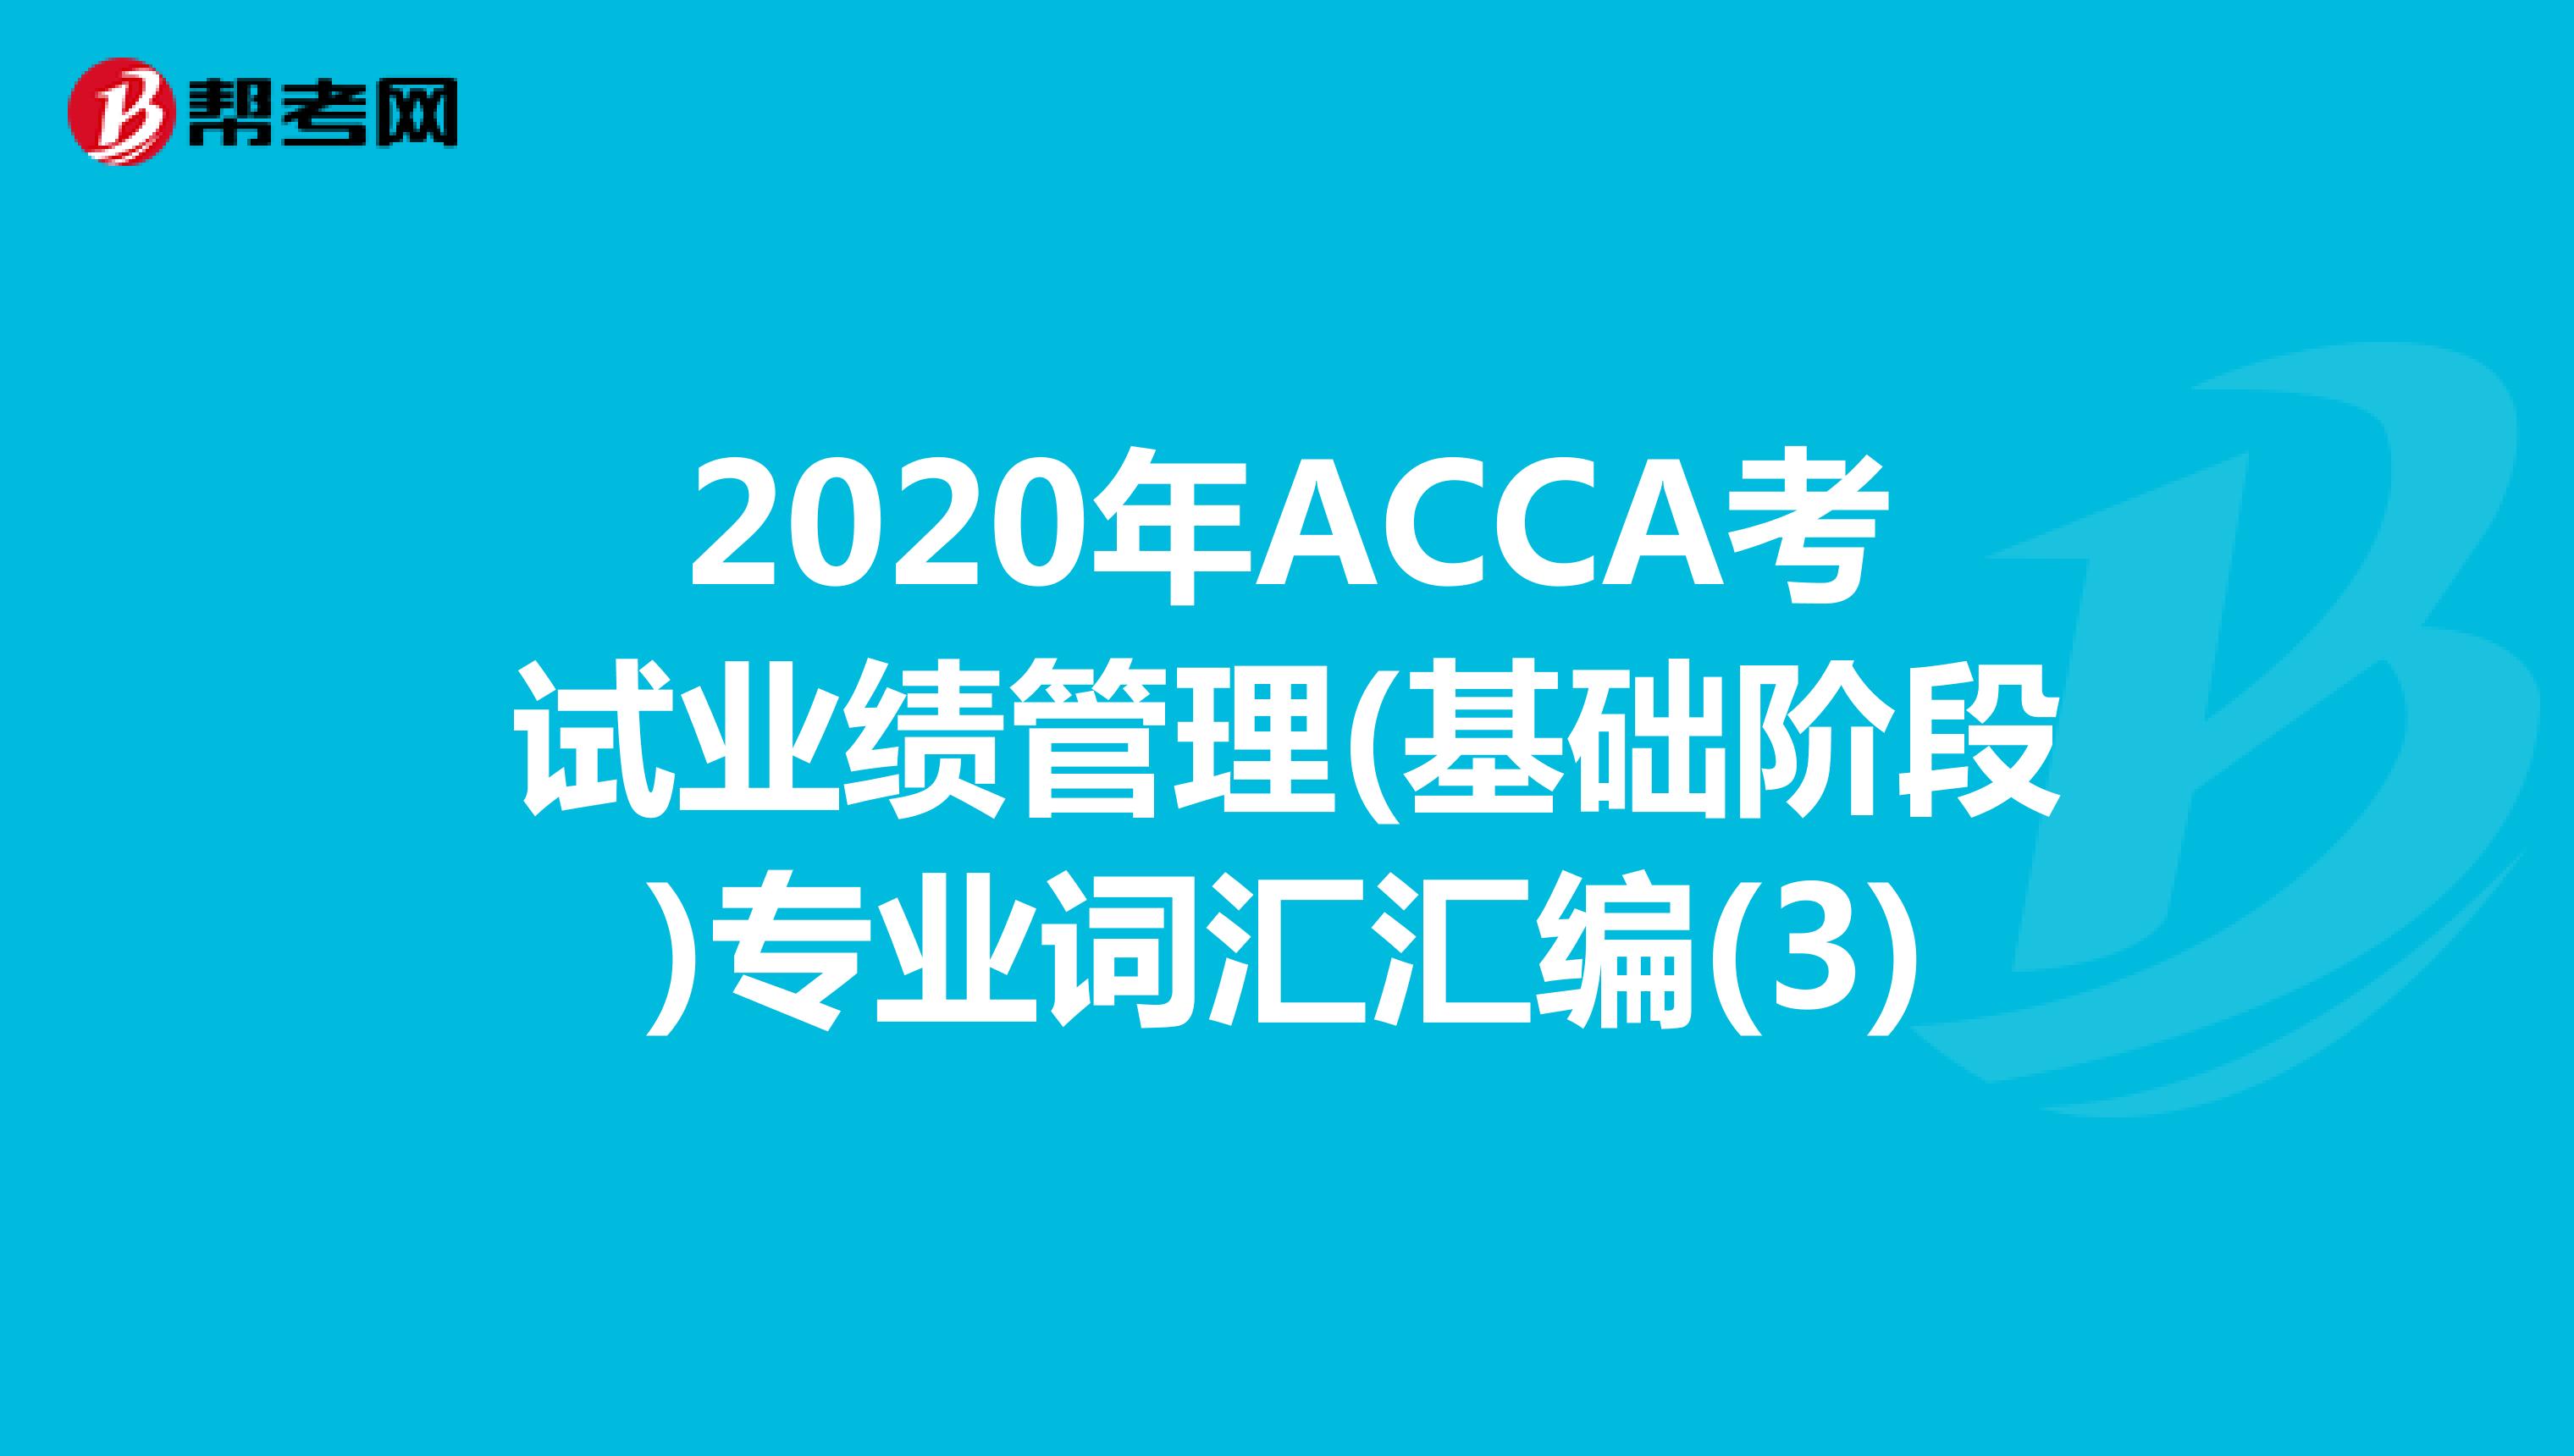 2020年ACCA考试业绩管理(基础阶段)专业词汇汇编(3)